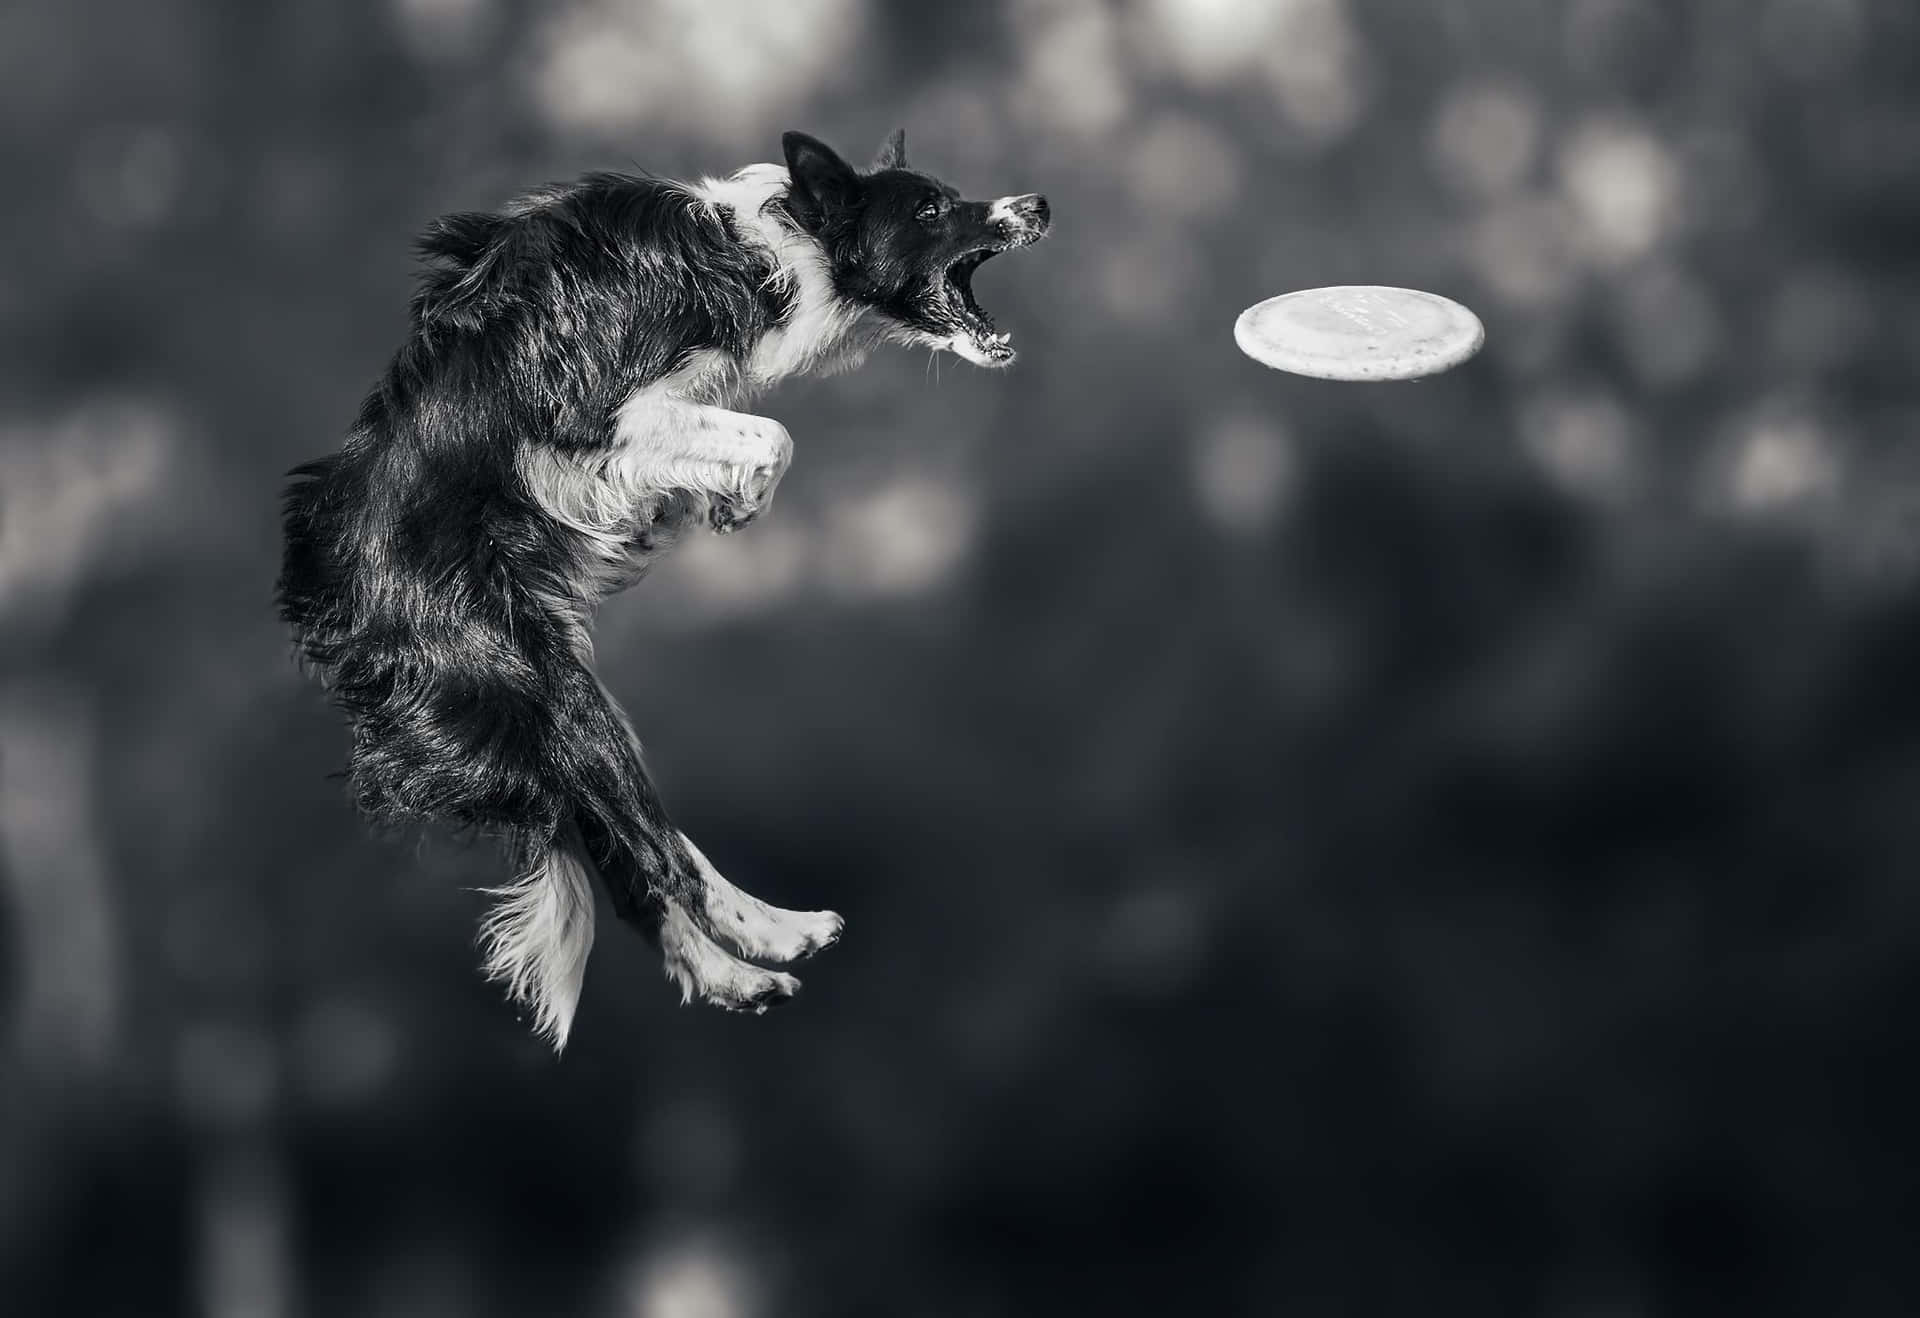 Unperro Saltando Para Atrapar Un Frisbee